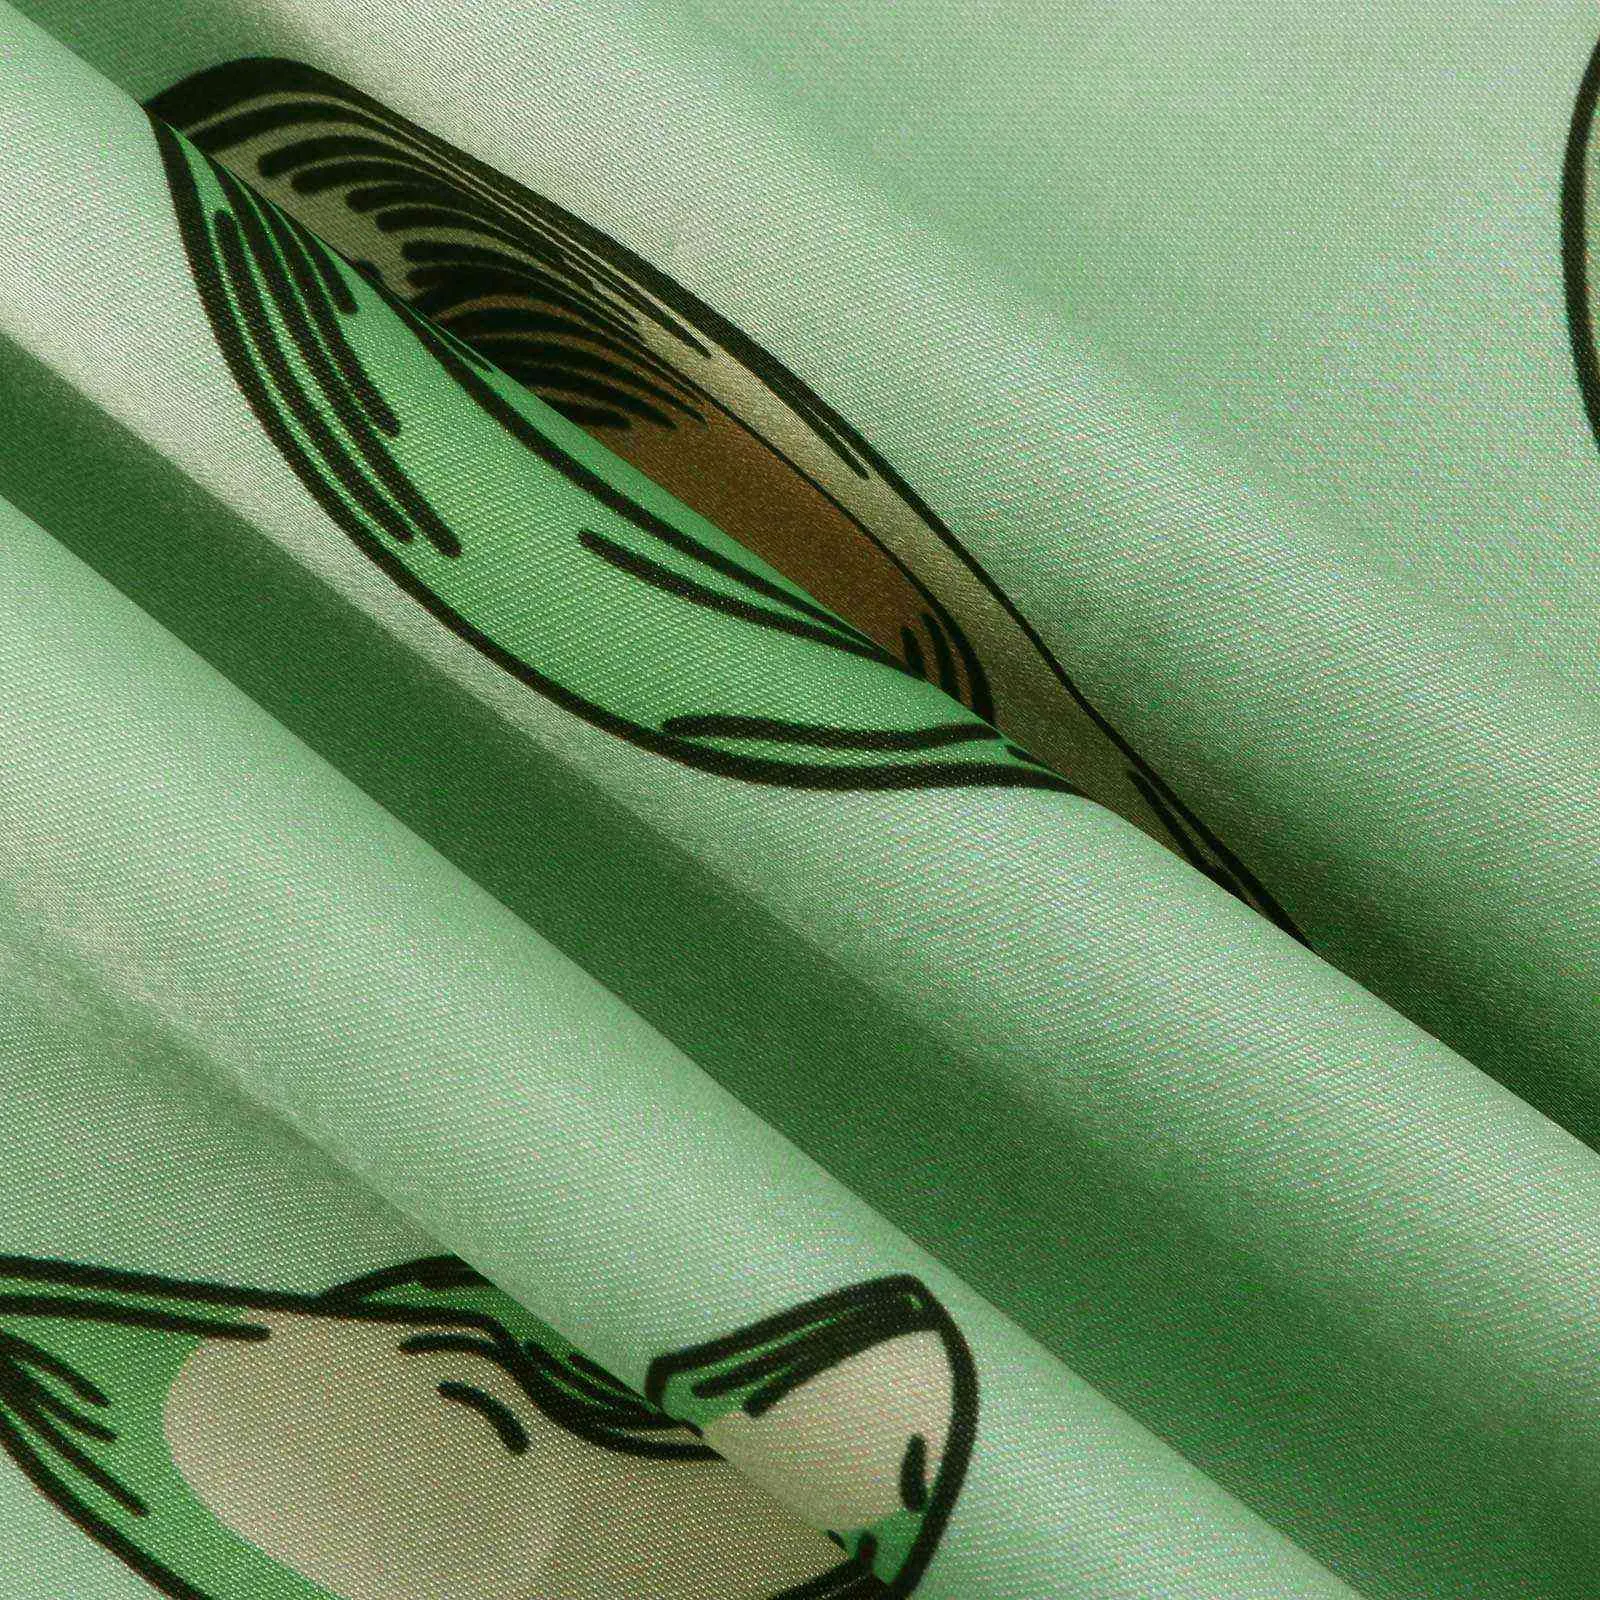 アボカドプリントパジャマのための女性のためのセクシーなサテンシルクパジャマセット夏のパジャマストラップキャミなトップスリーウェアVネックピジャマA50 Q0706